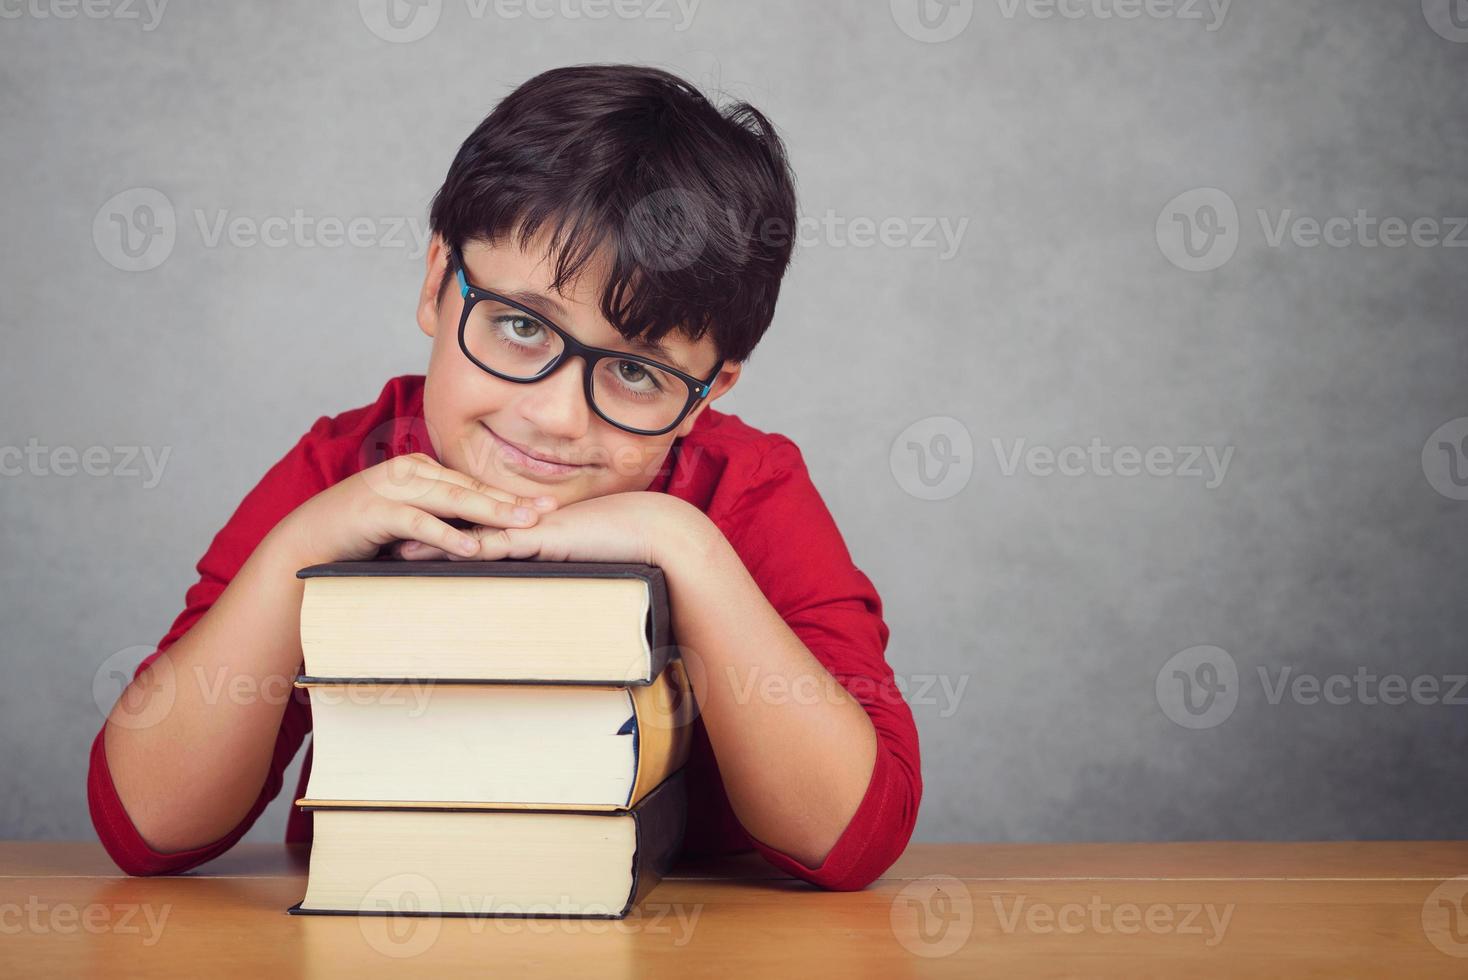 menino sorridente, apoiando-se em livros foto